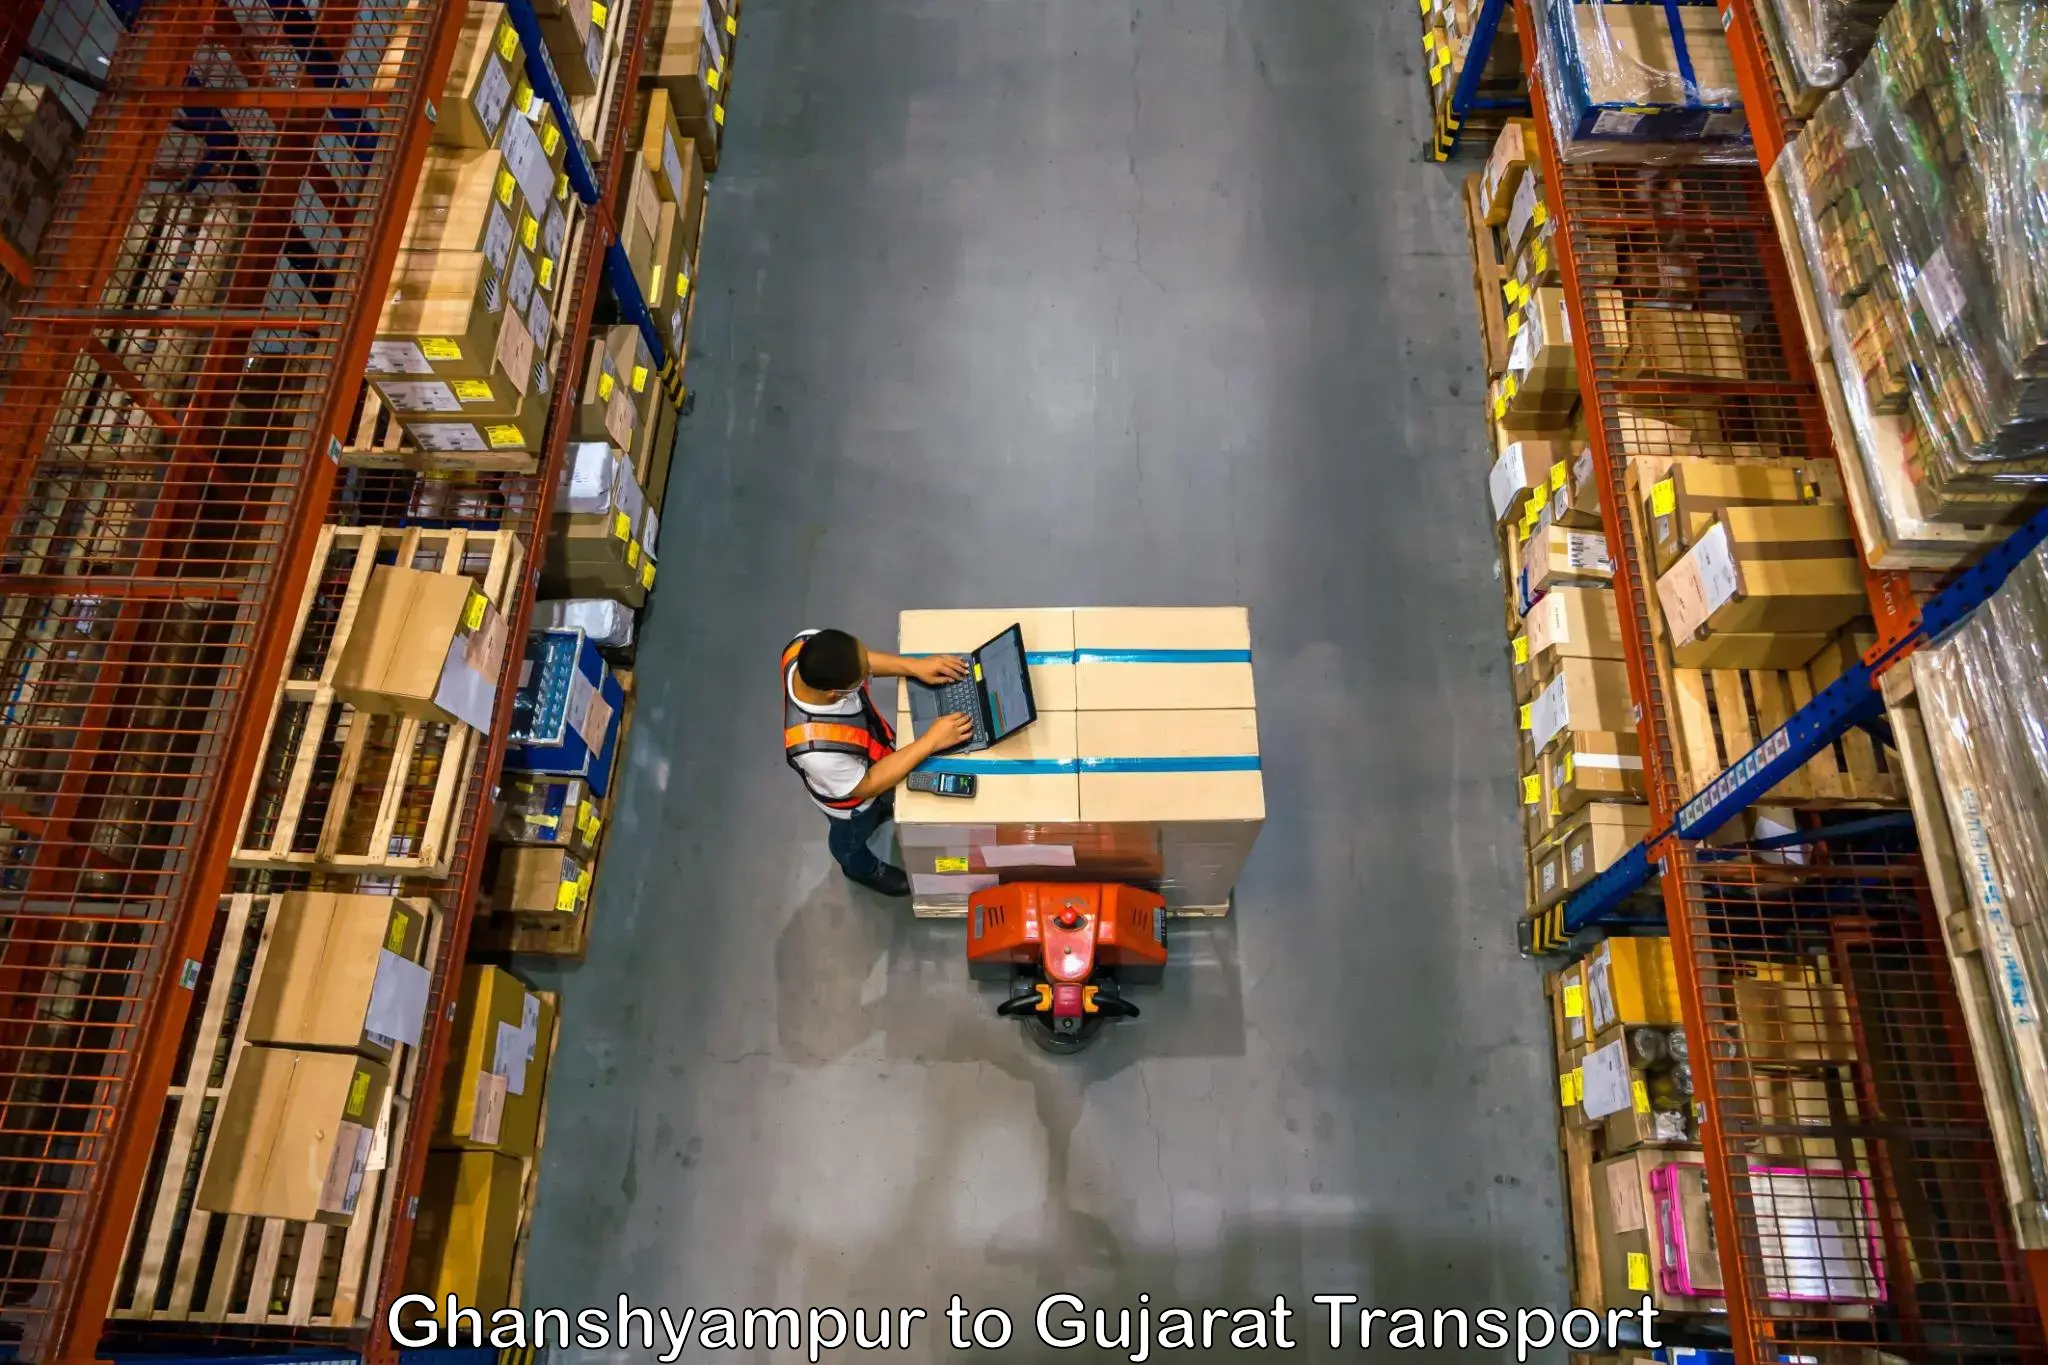 Luggage transport services Ghanshyampur to Dediapada